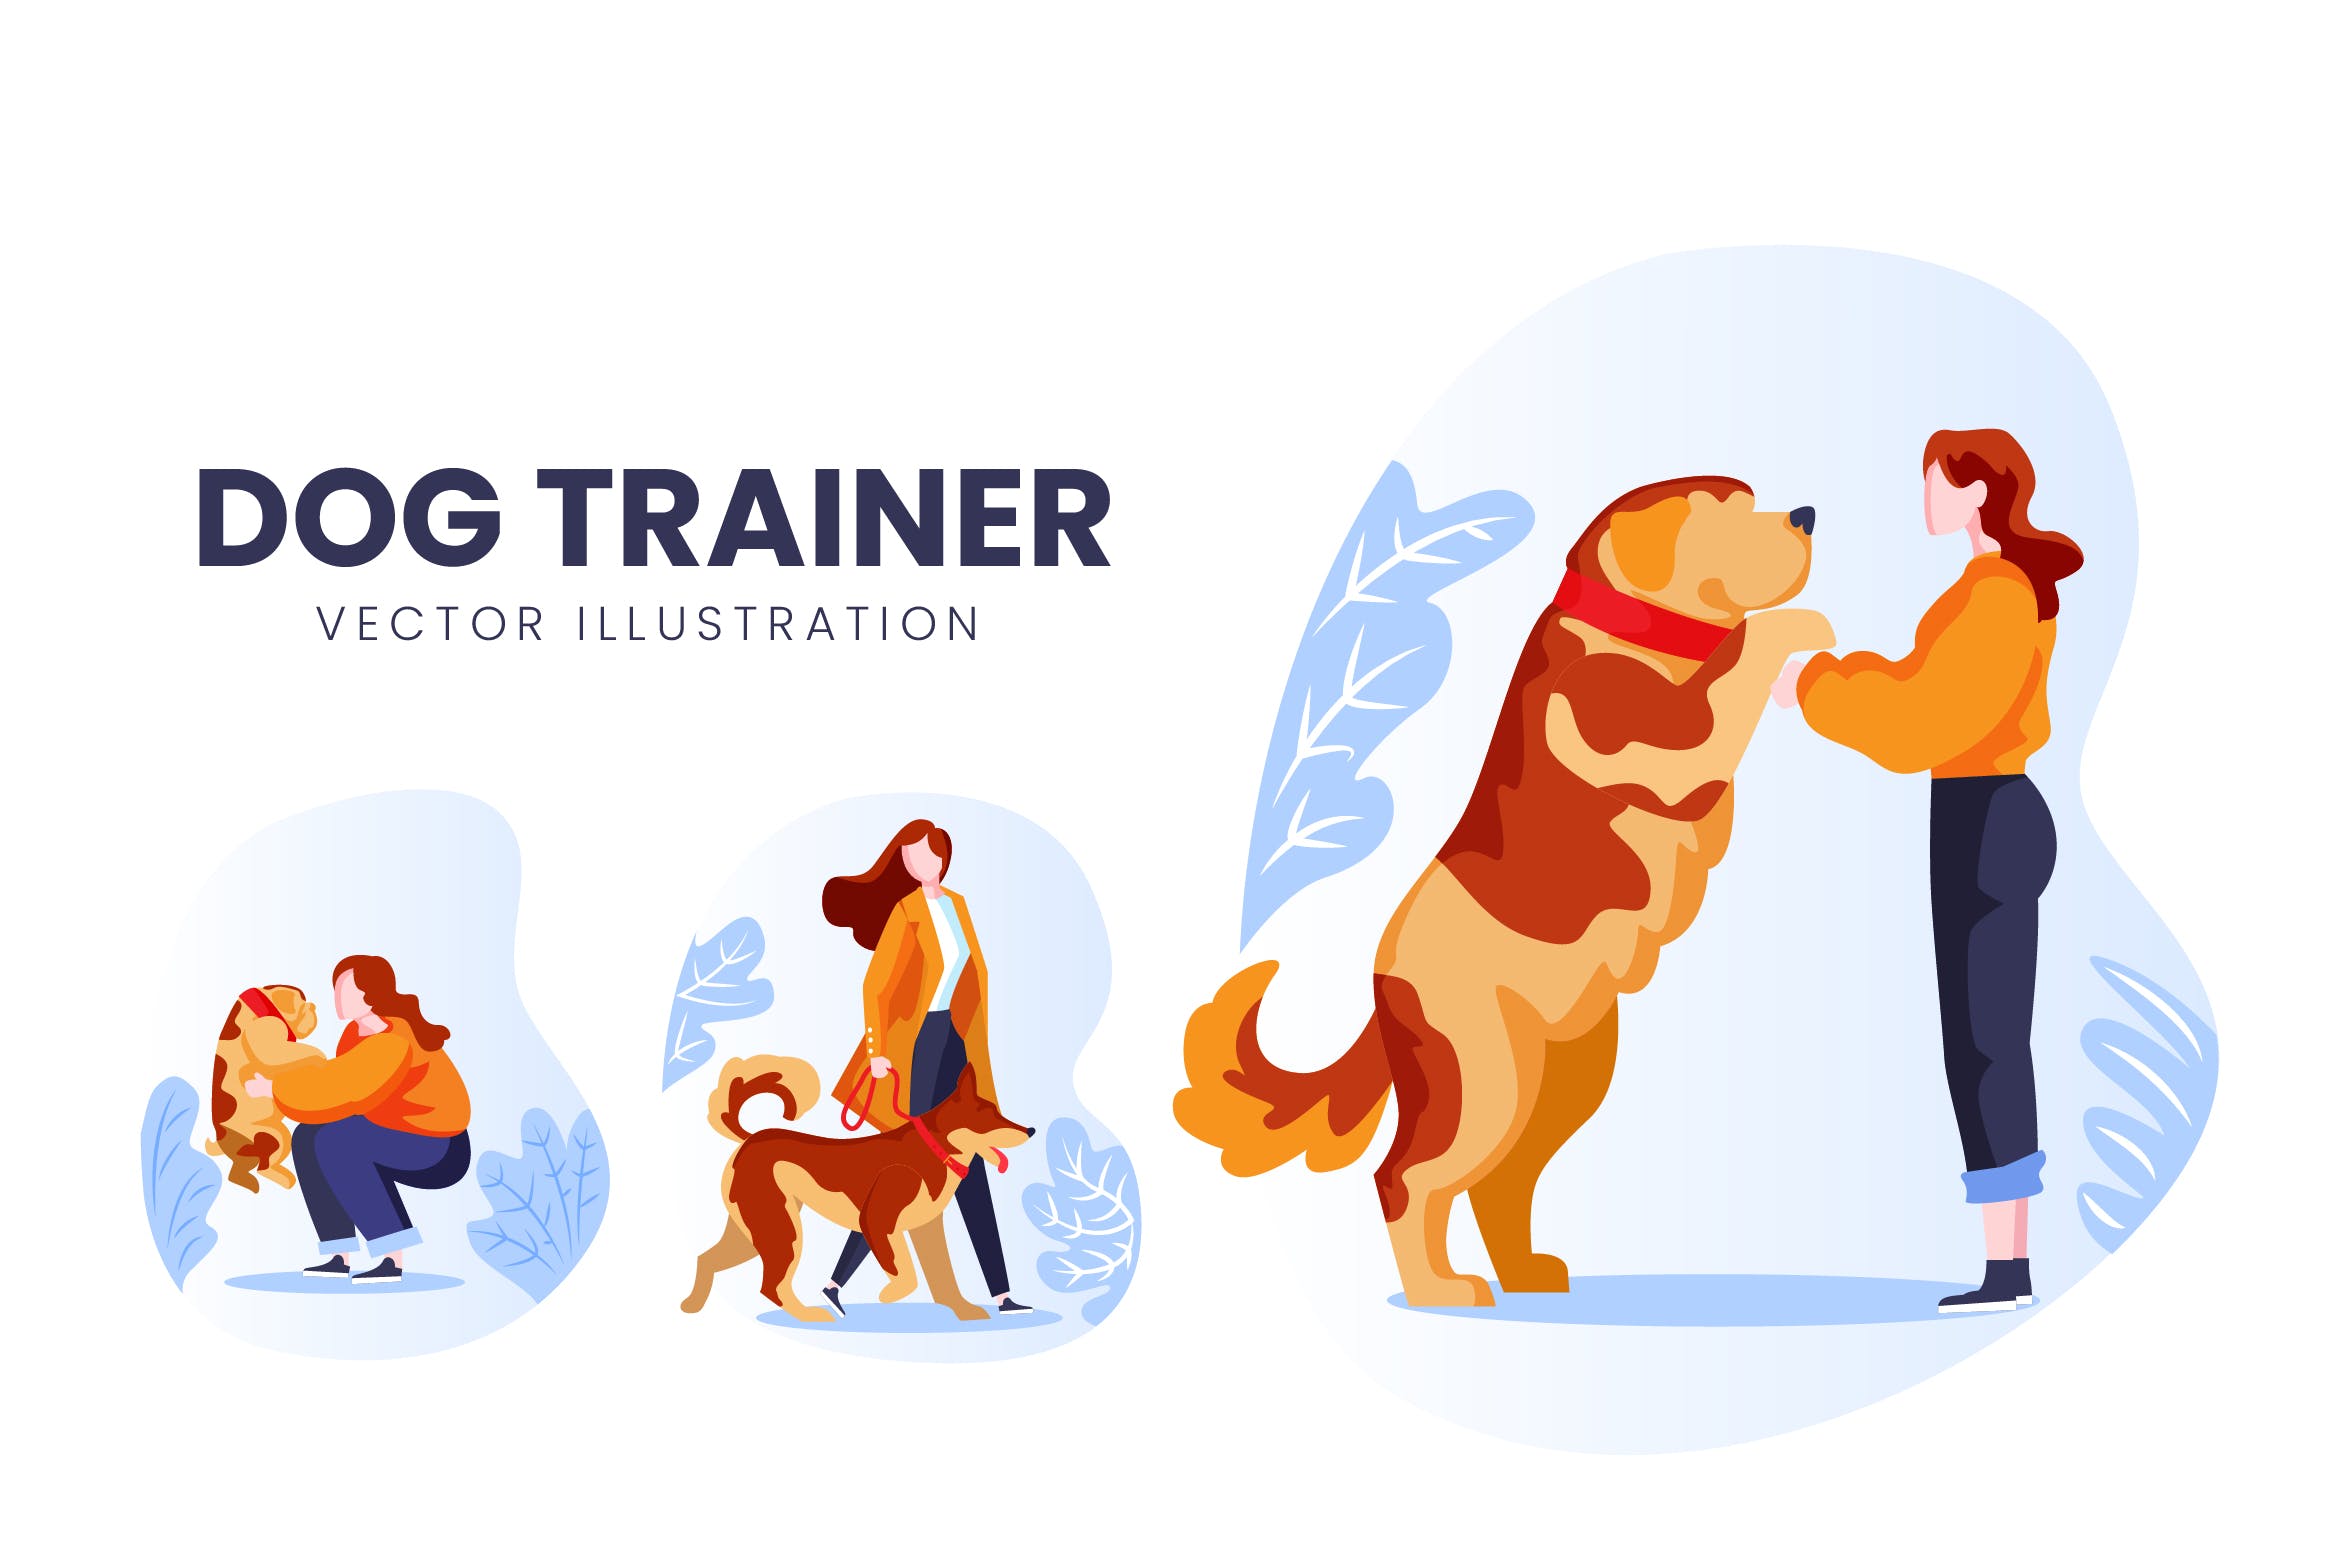 训犬员人物形象蚂蚁素材精选手绘插画矢量素材 Dog Trainer Vector Character Set插图